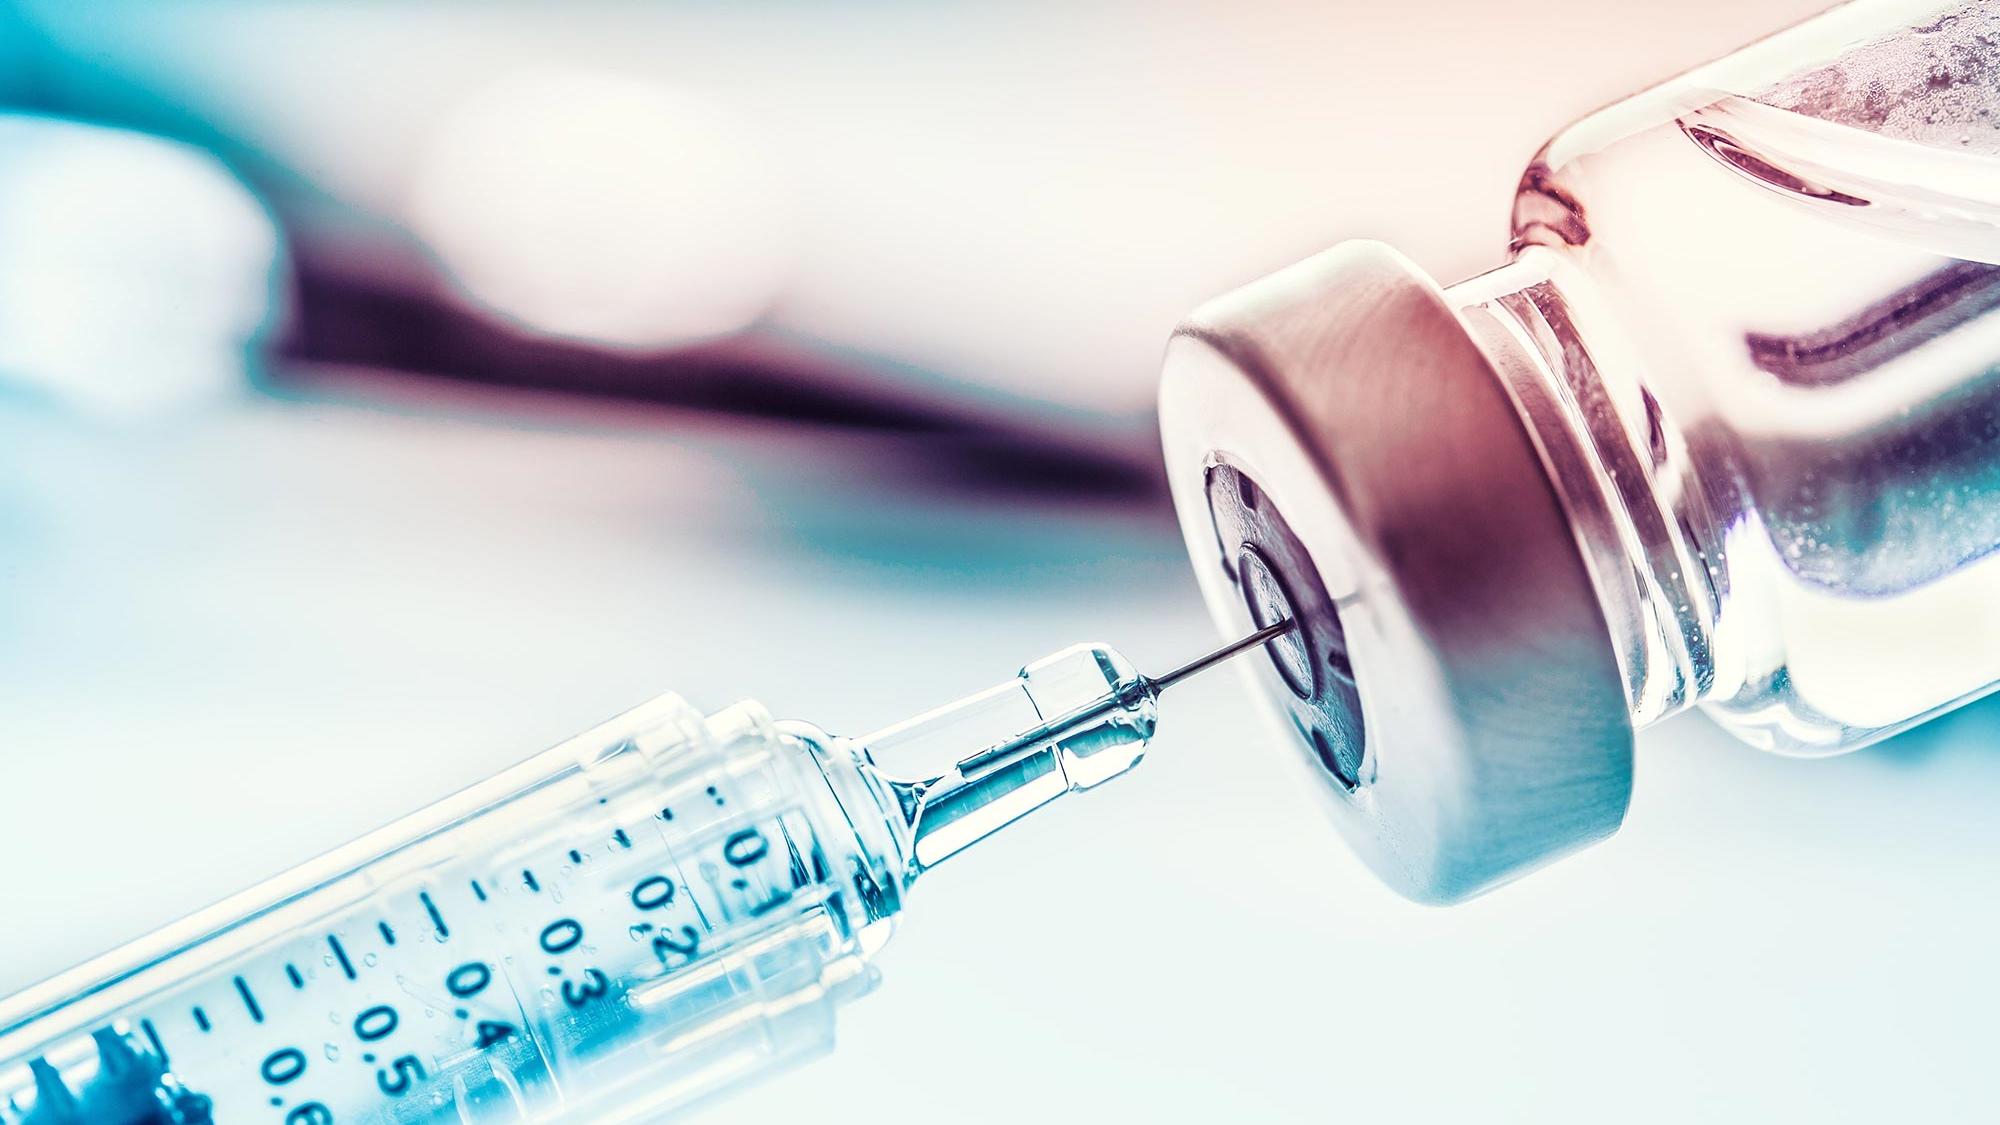 Вакцина на основе геля может оказаться эффективнее обычной